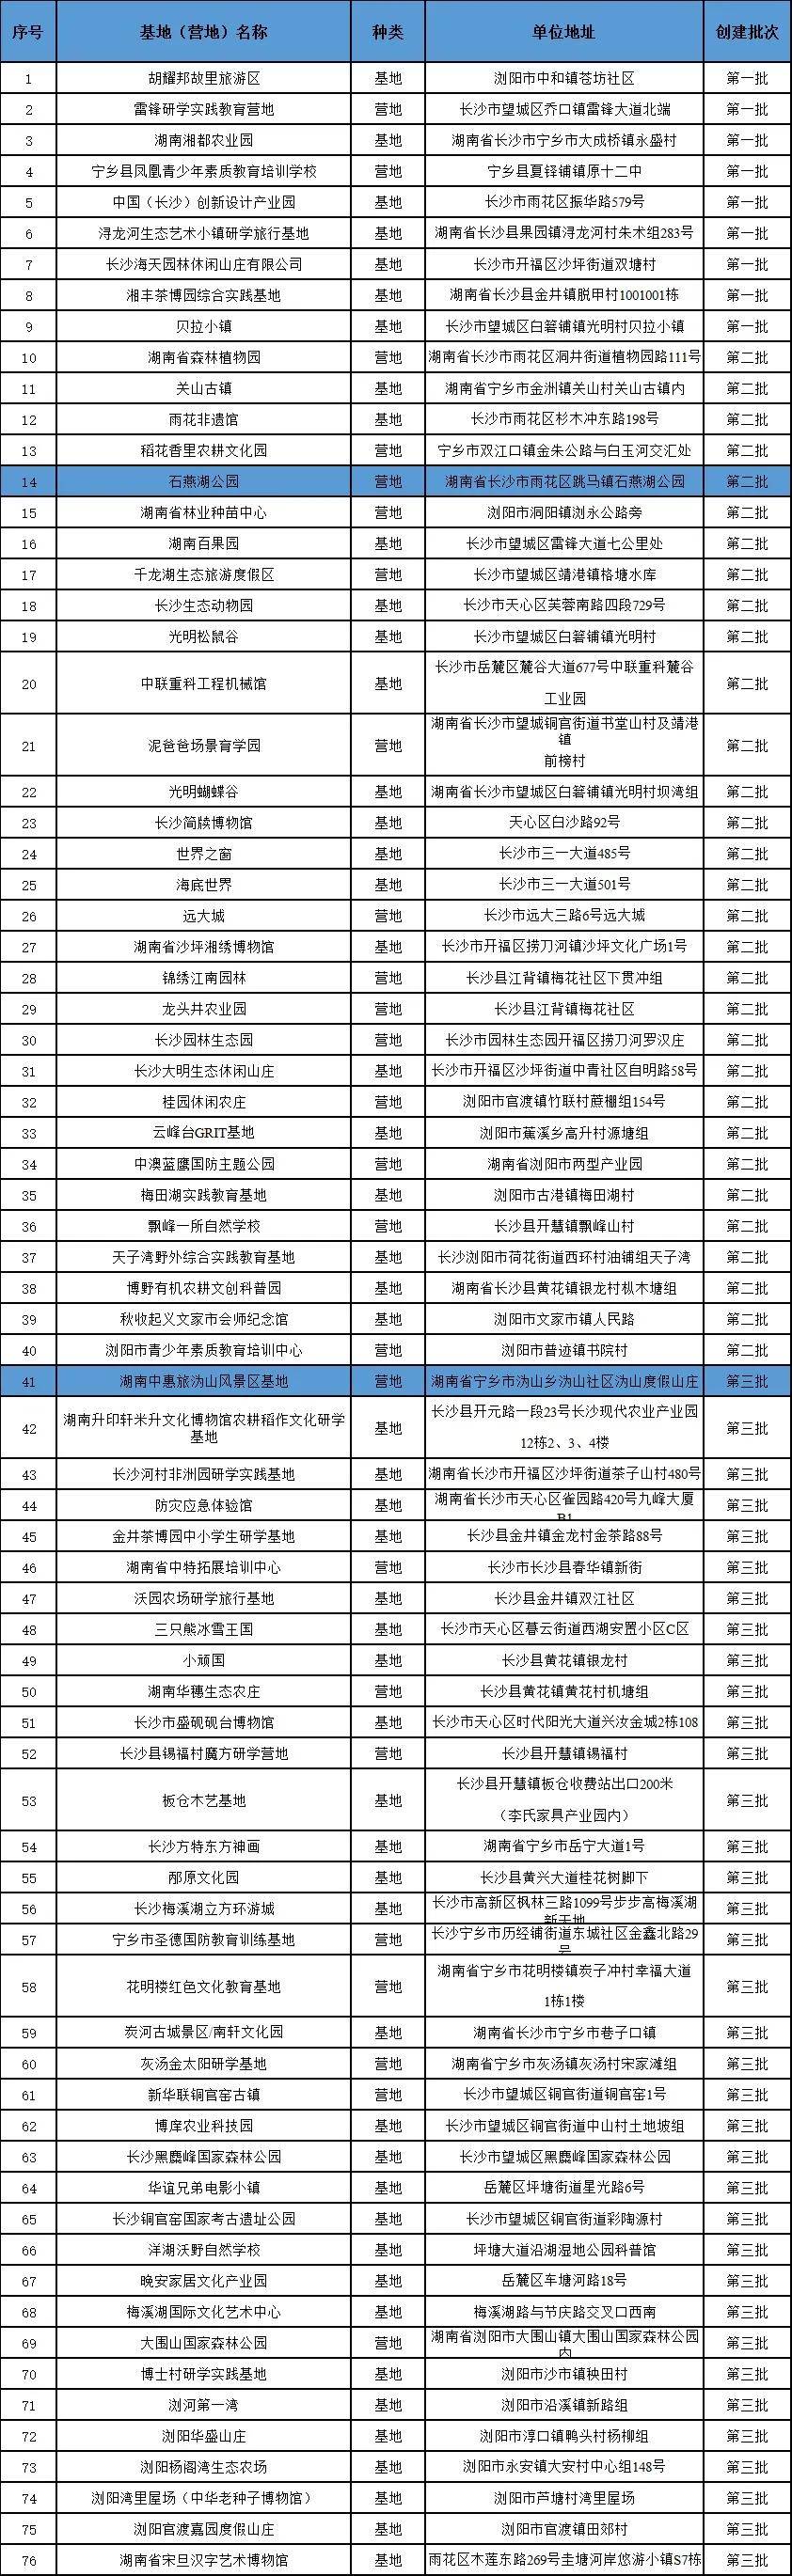 长沙学生实践基地（营地）名单出炉！中惠旅石燕湖、沩山景区上榜